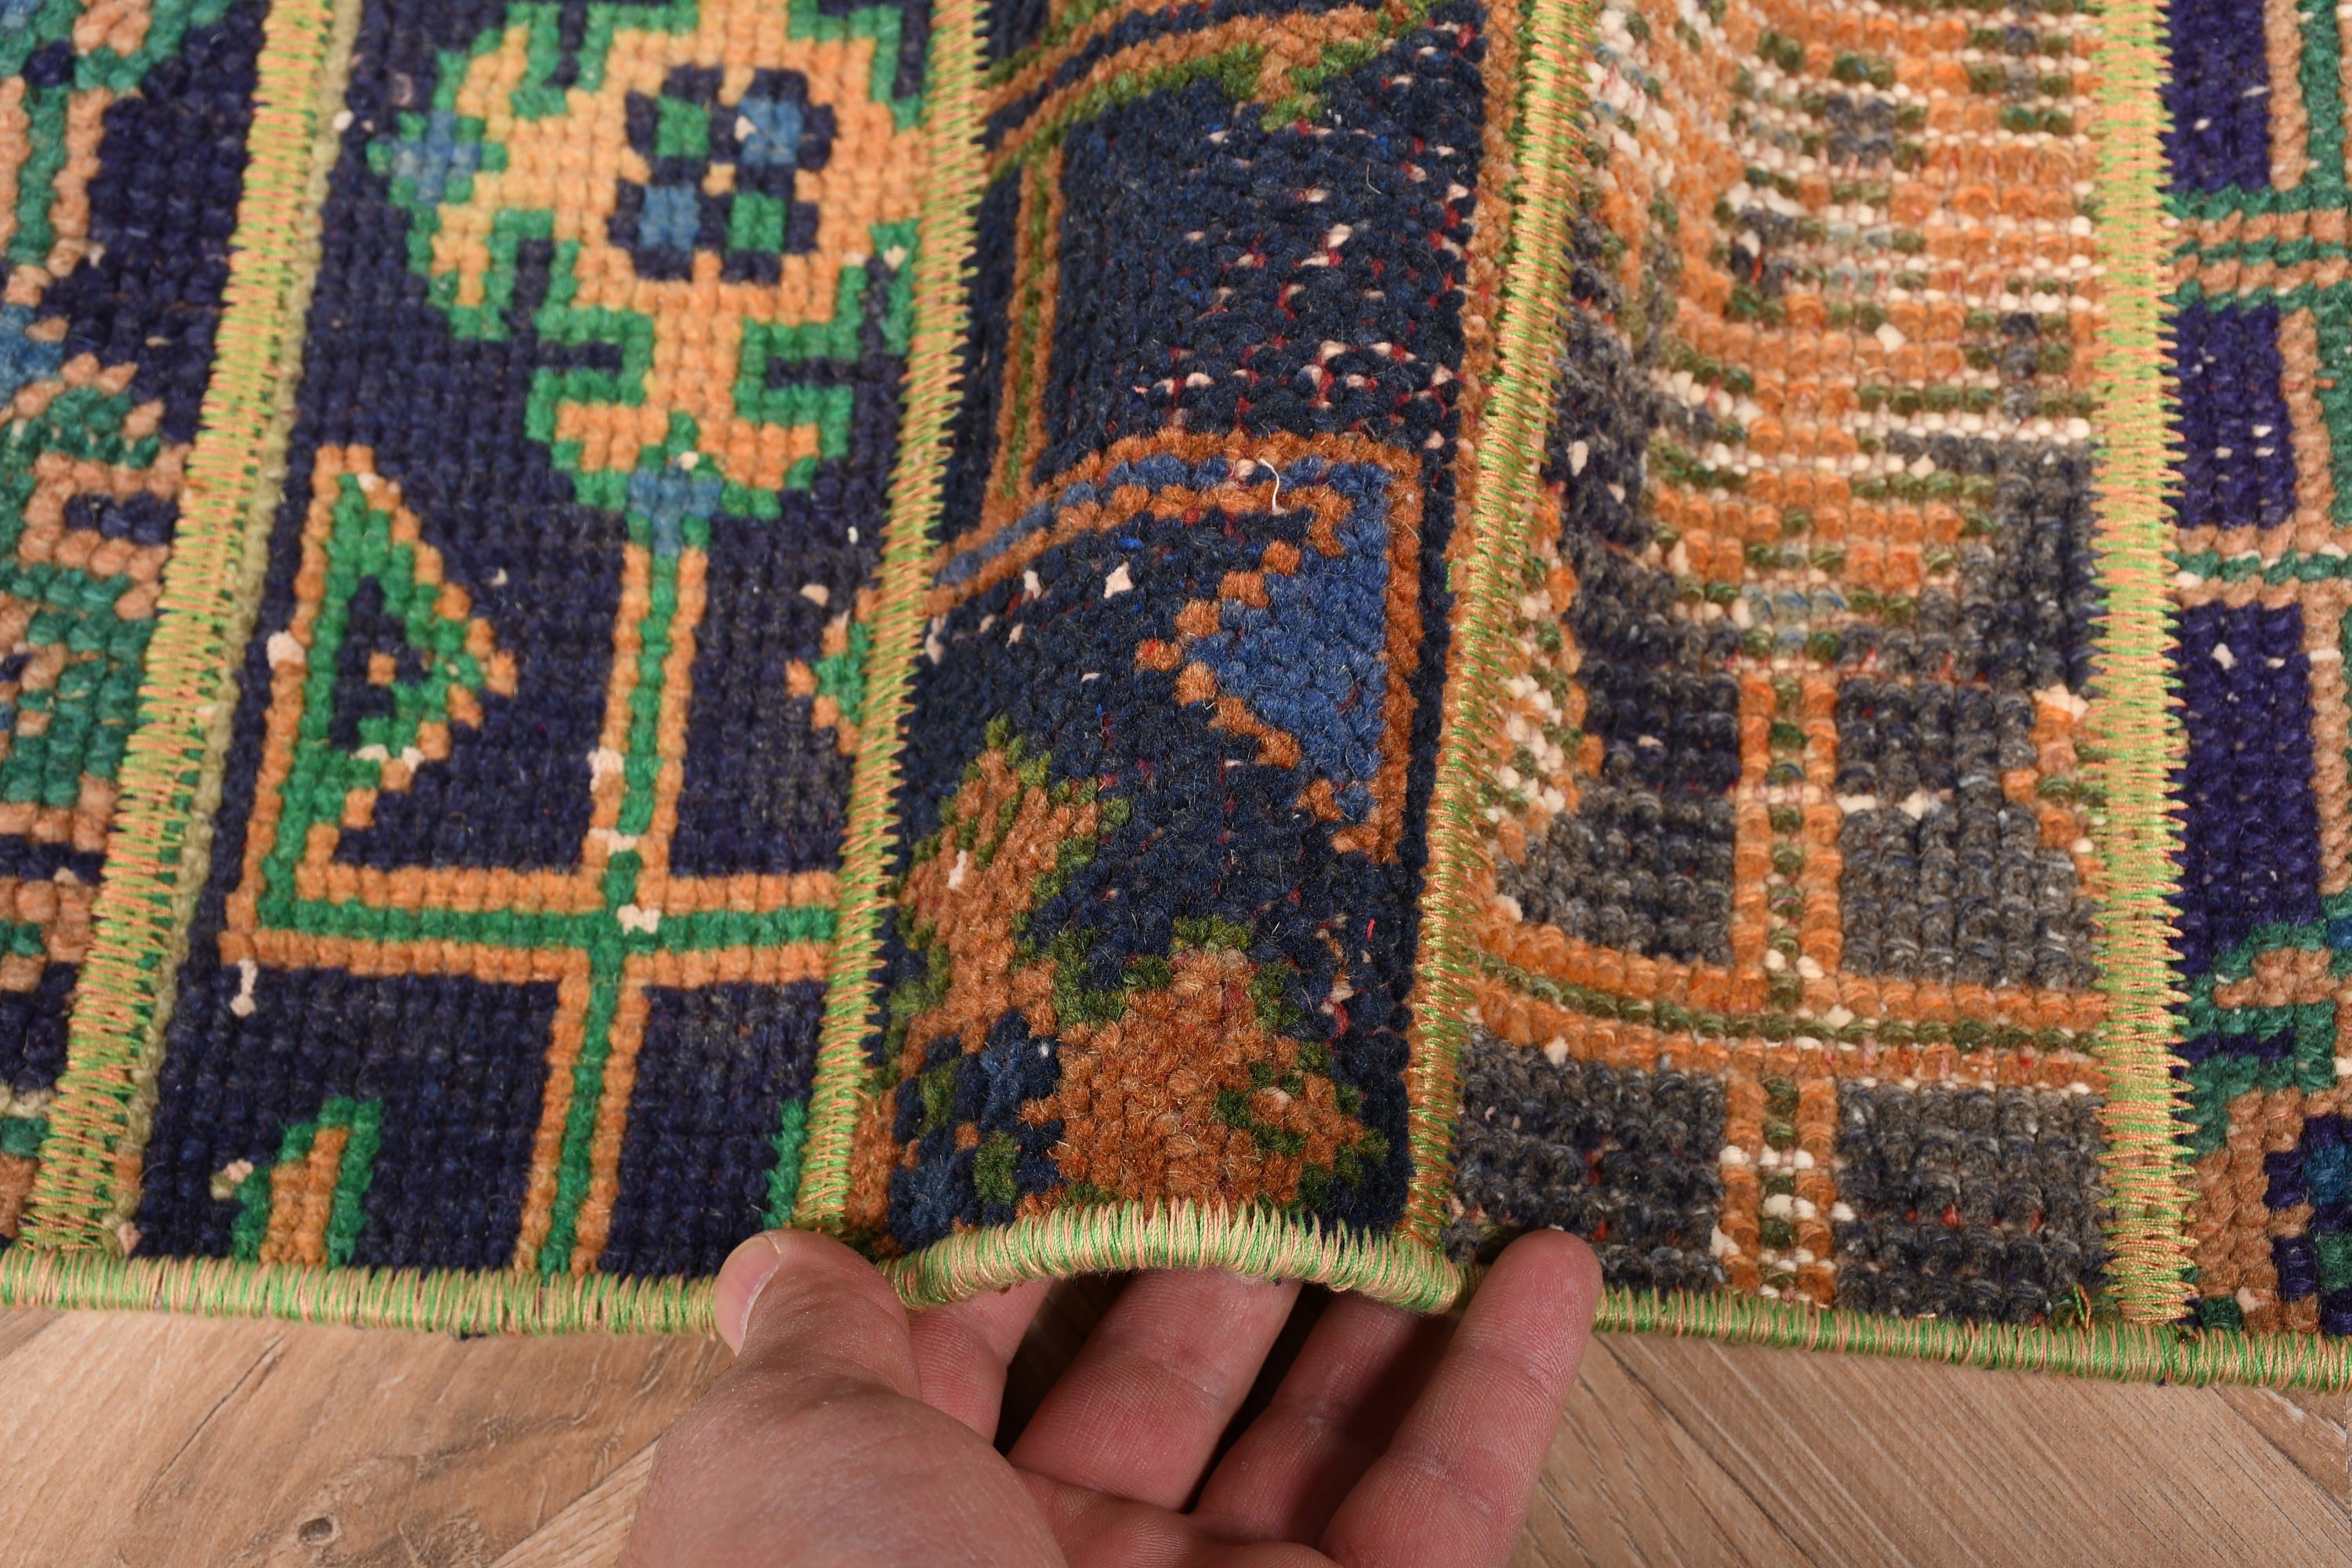 Anatolian Rug, Rugs for Bathroom, Nursery Rugs, Vintage Rug, Wool Rugs, Blue Moroccan Rug, 3x4.9 ft Small Rug, Door Mat Rug, Turkish Rug